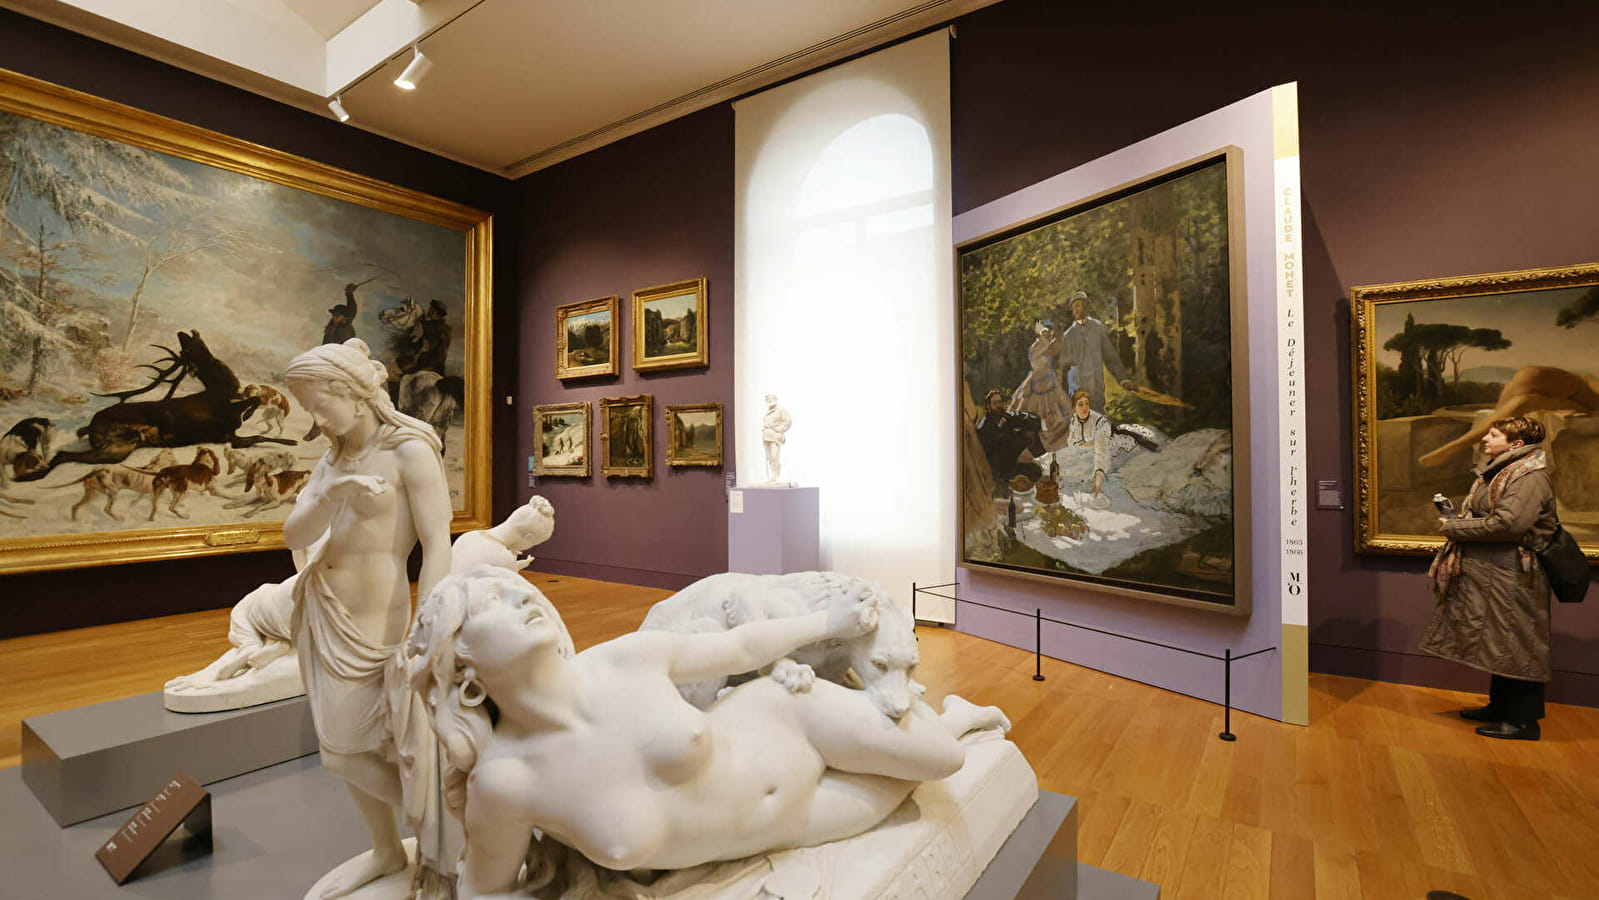 Offre Week-end / Claude Monet visite le pays de Gustave Courbet